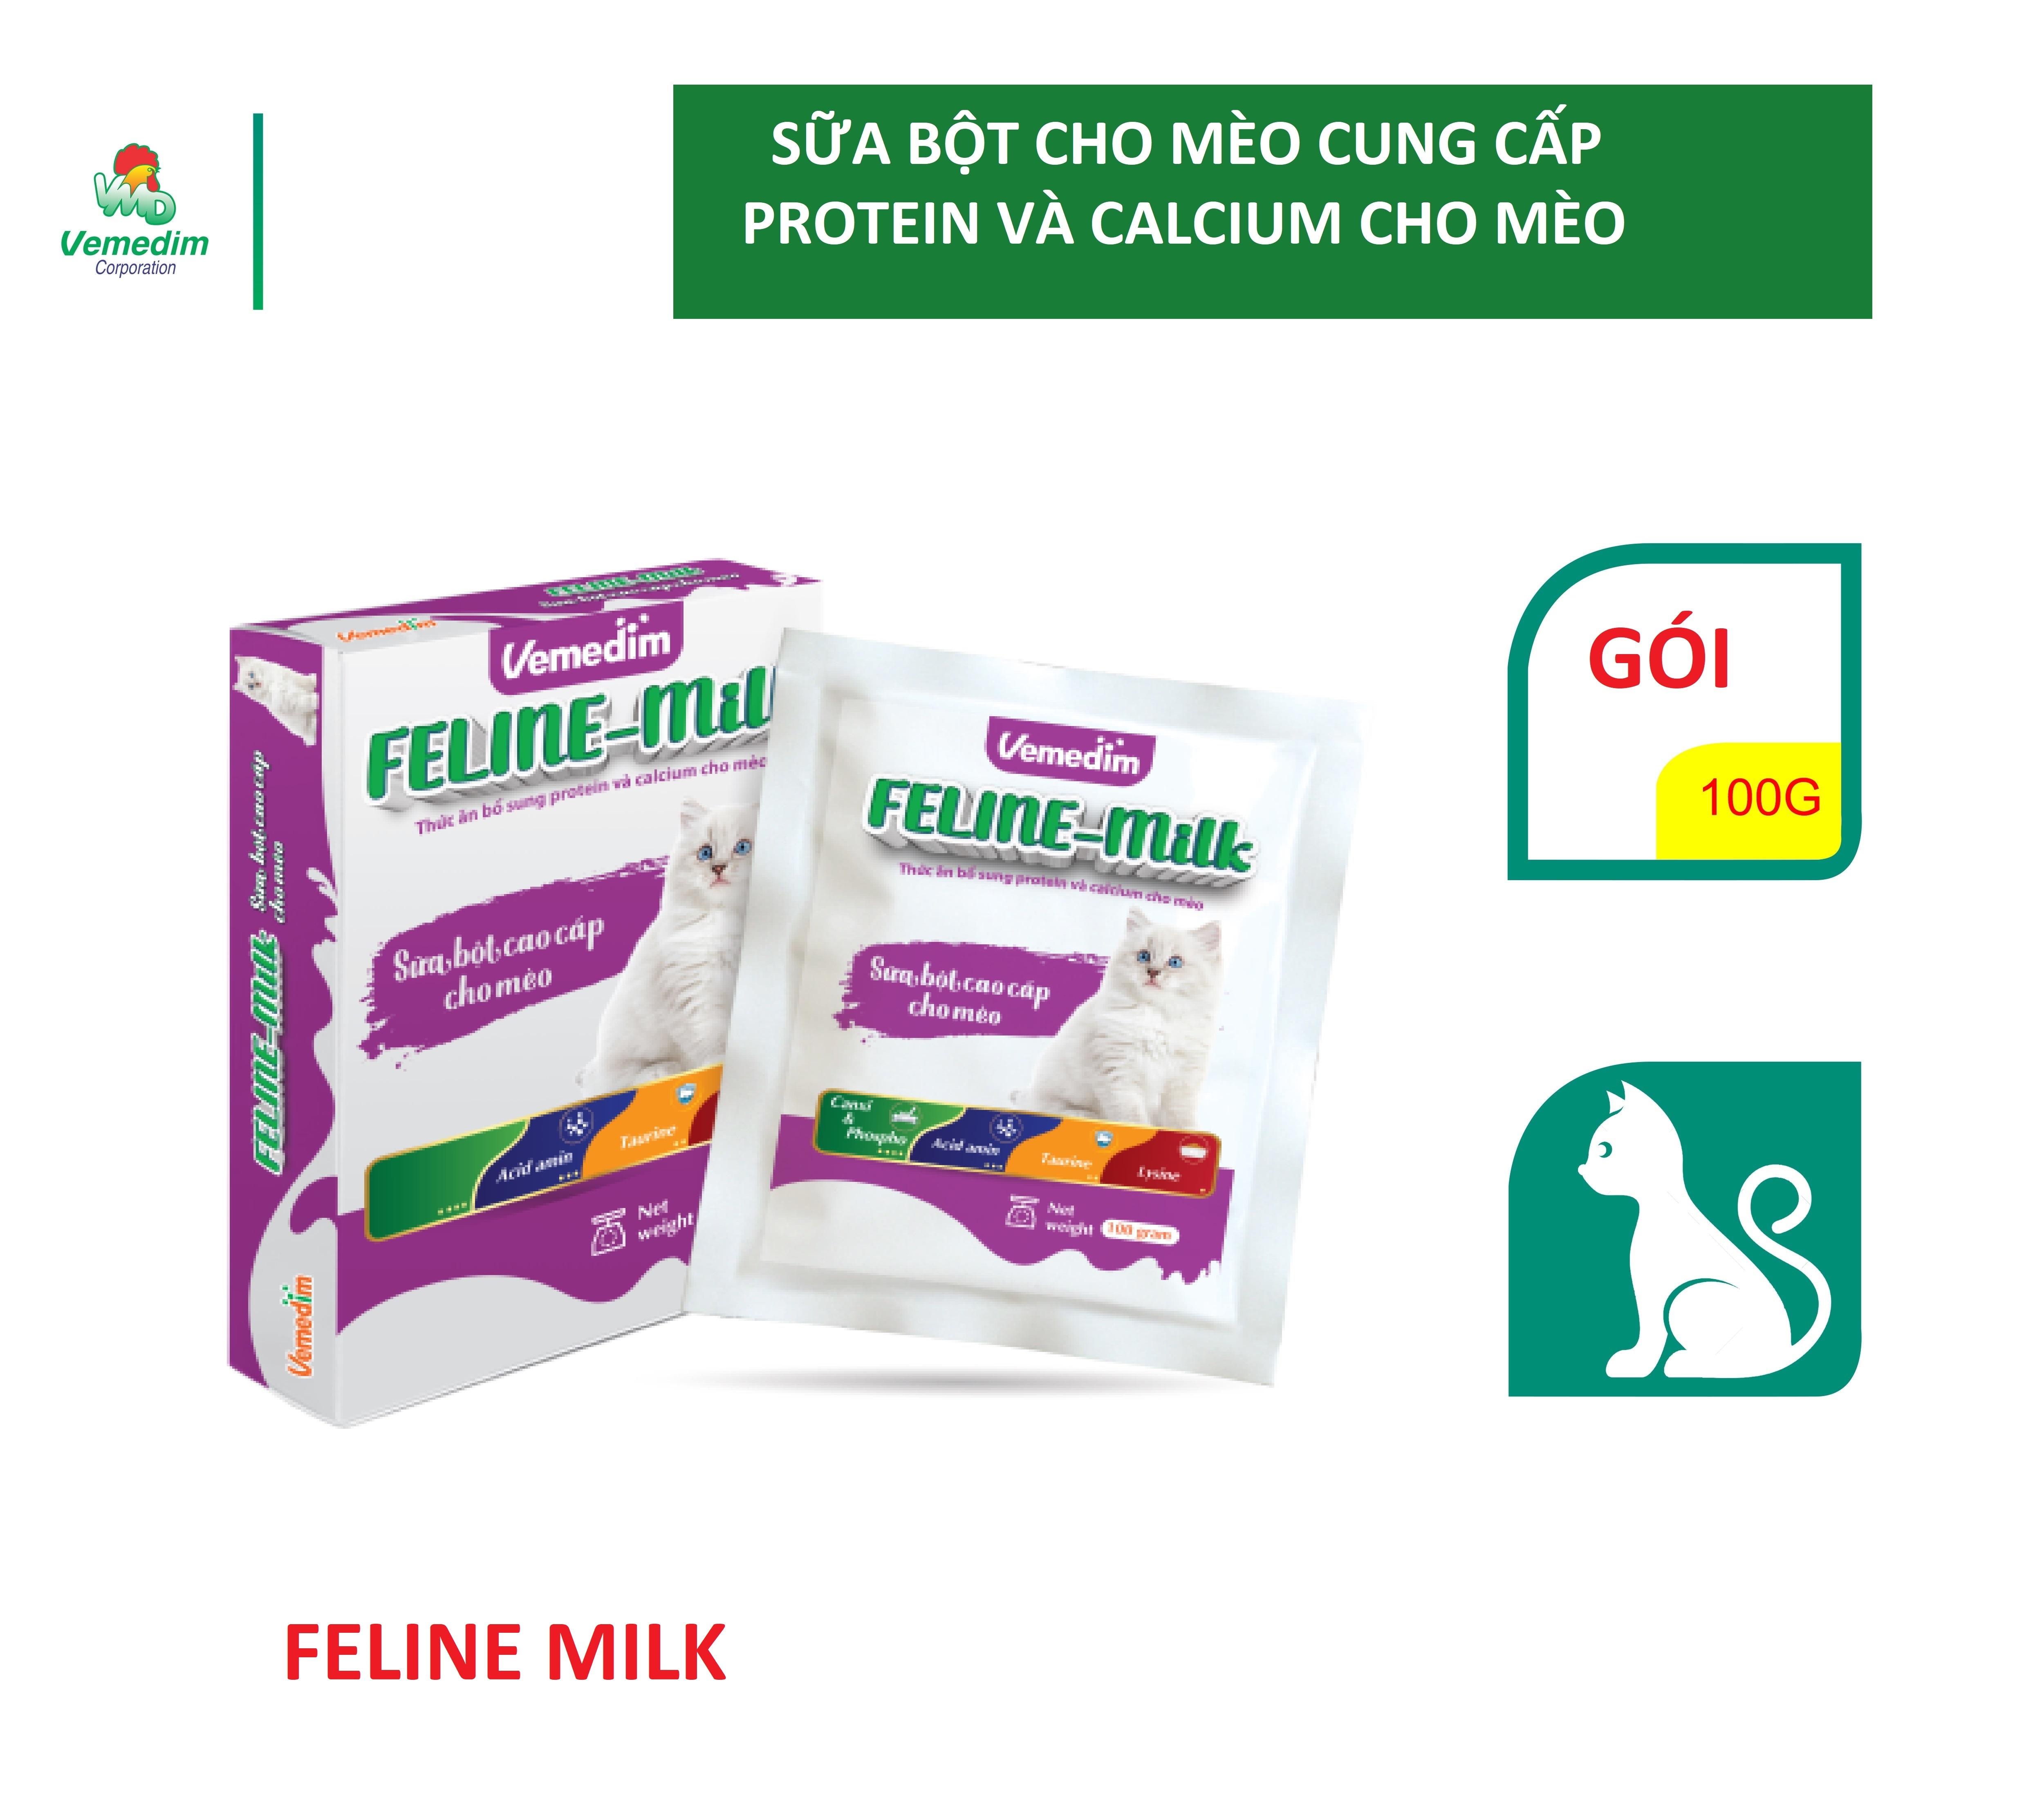 Vemedim Feline milk sữa bột dành cho mèo con, mèo lớn, mèo đang mang thai và dưỡng bệnh, gói 100g